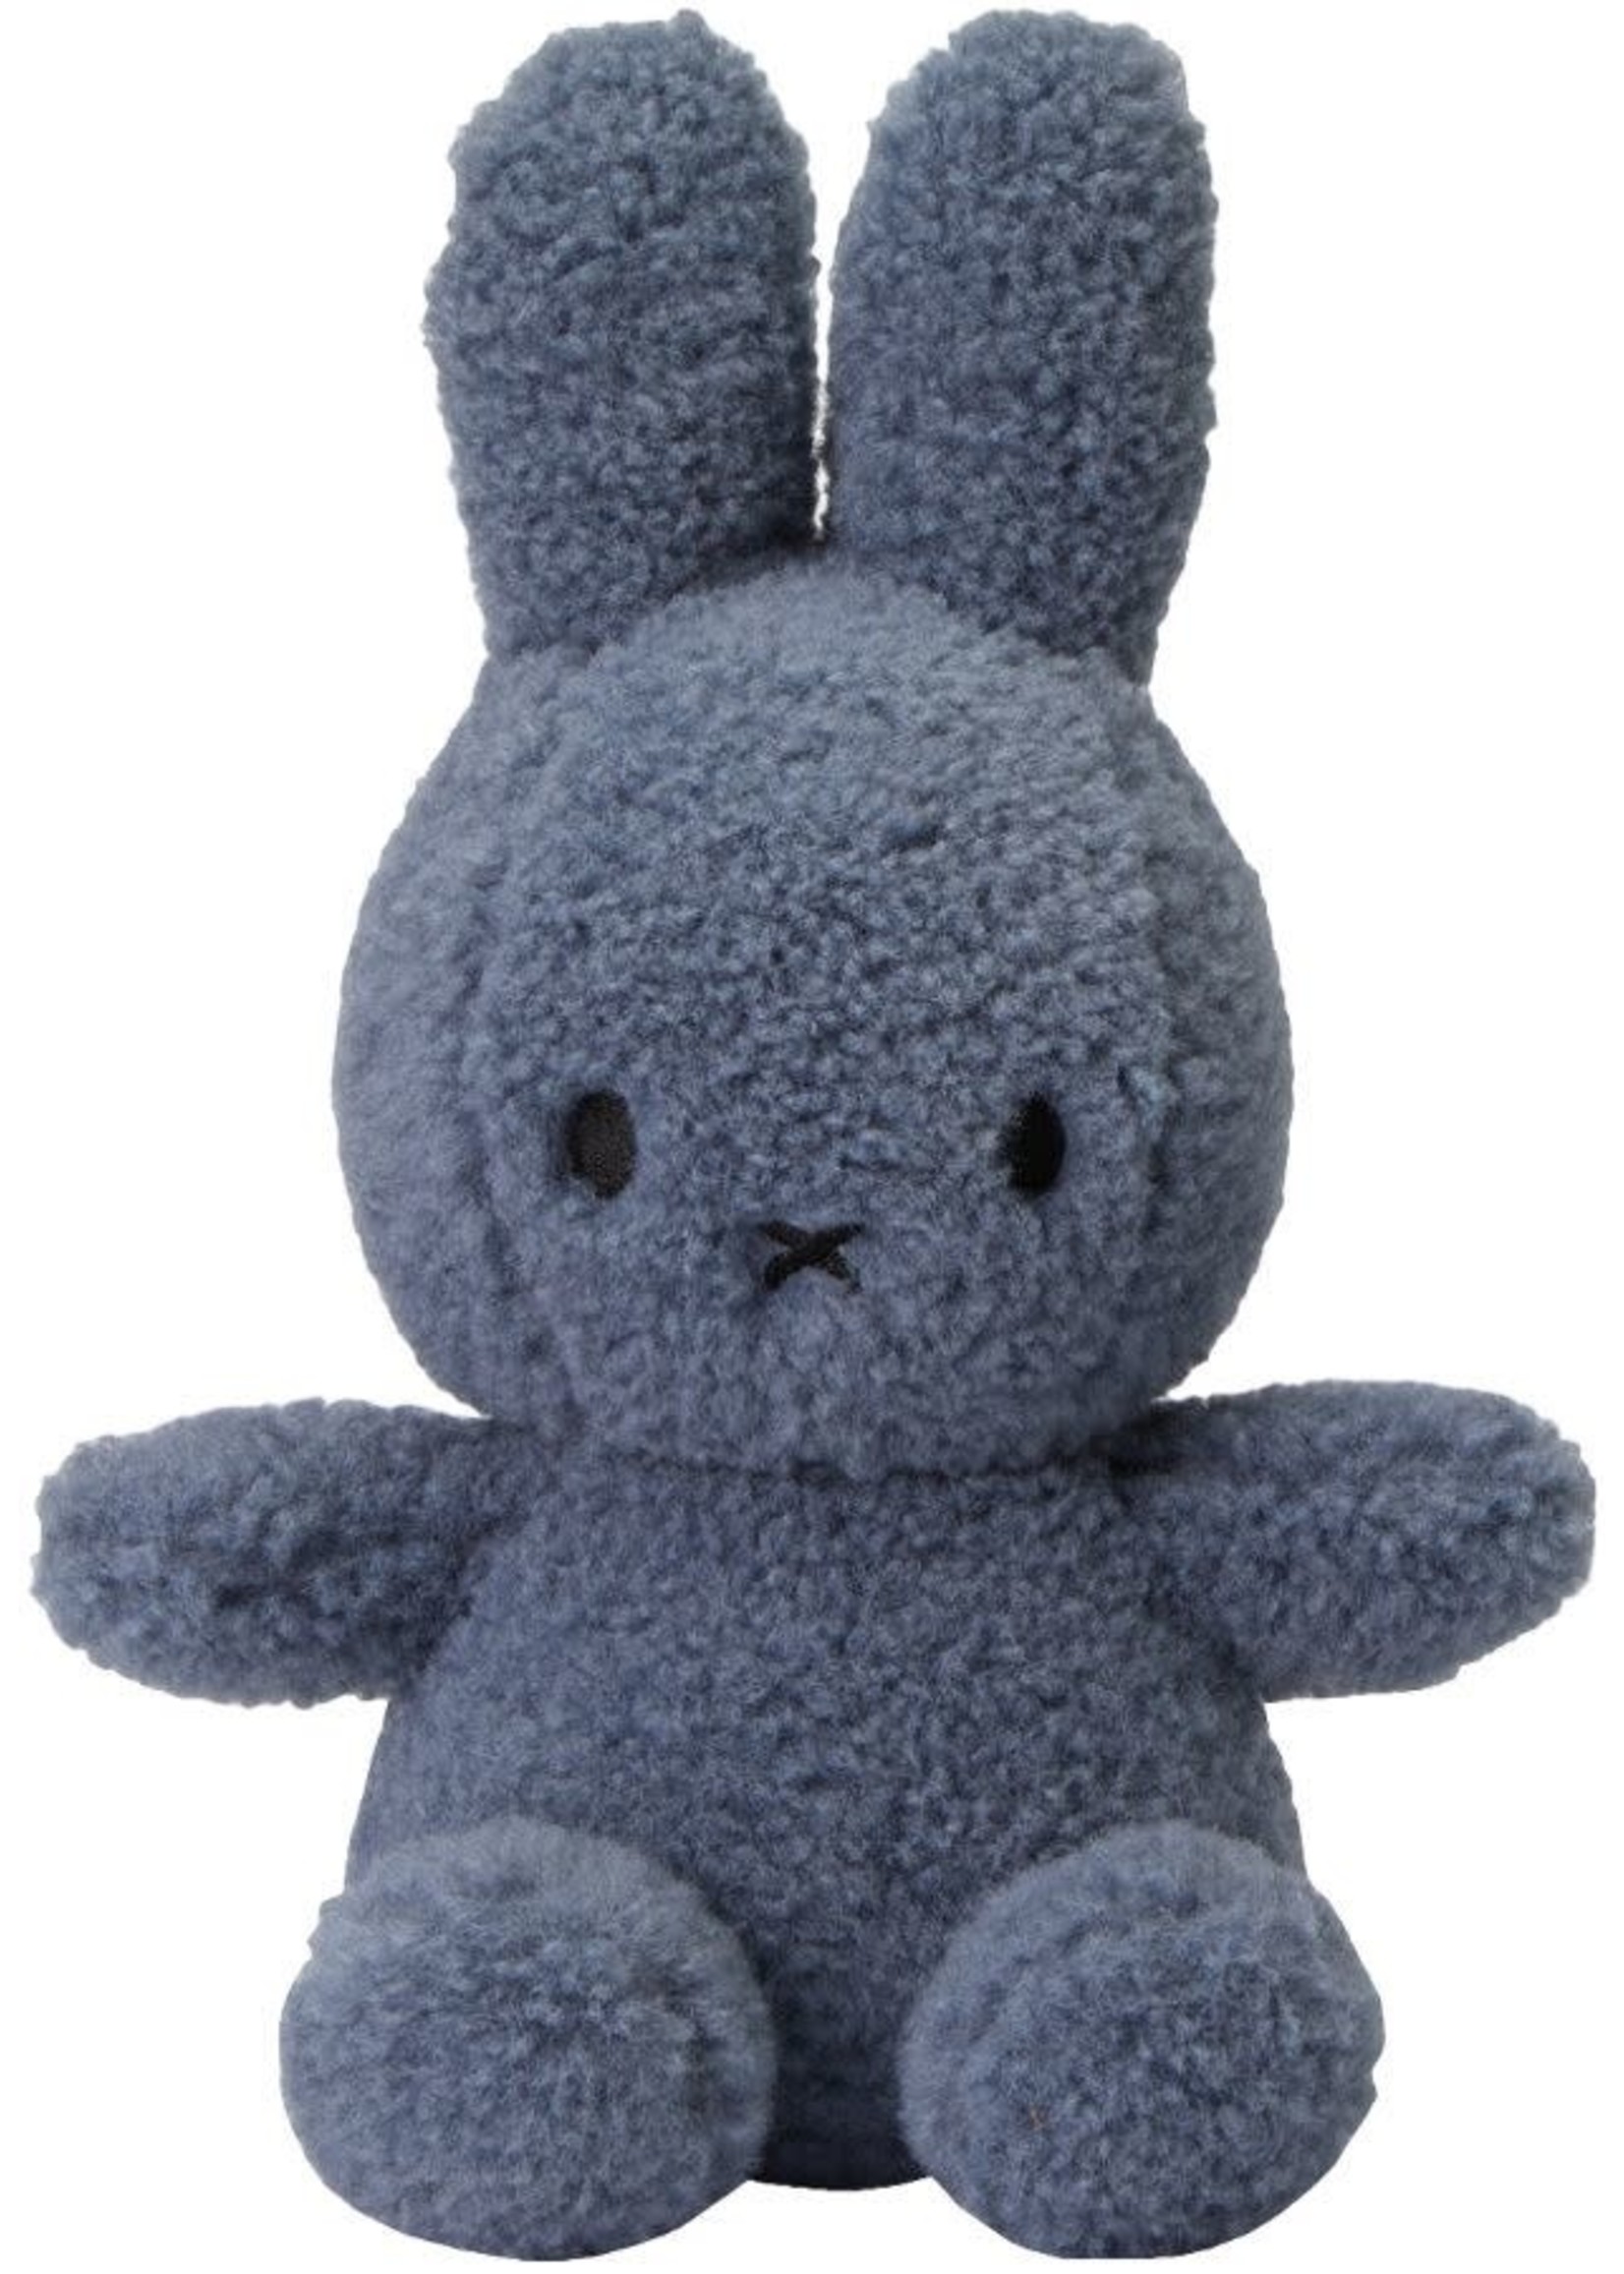 Nijntje-Miffy Miffy Sitting Teddy Blue - 23 cm - 100% recycled